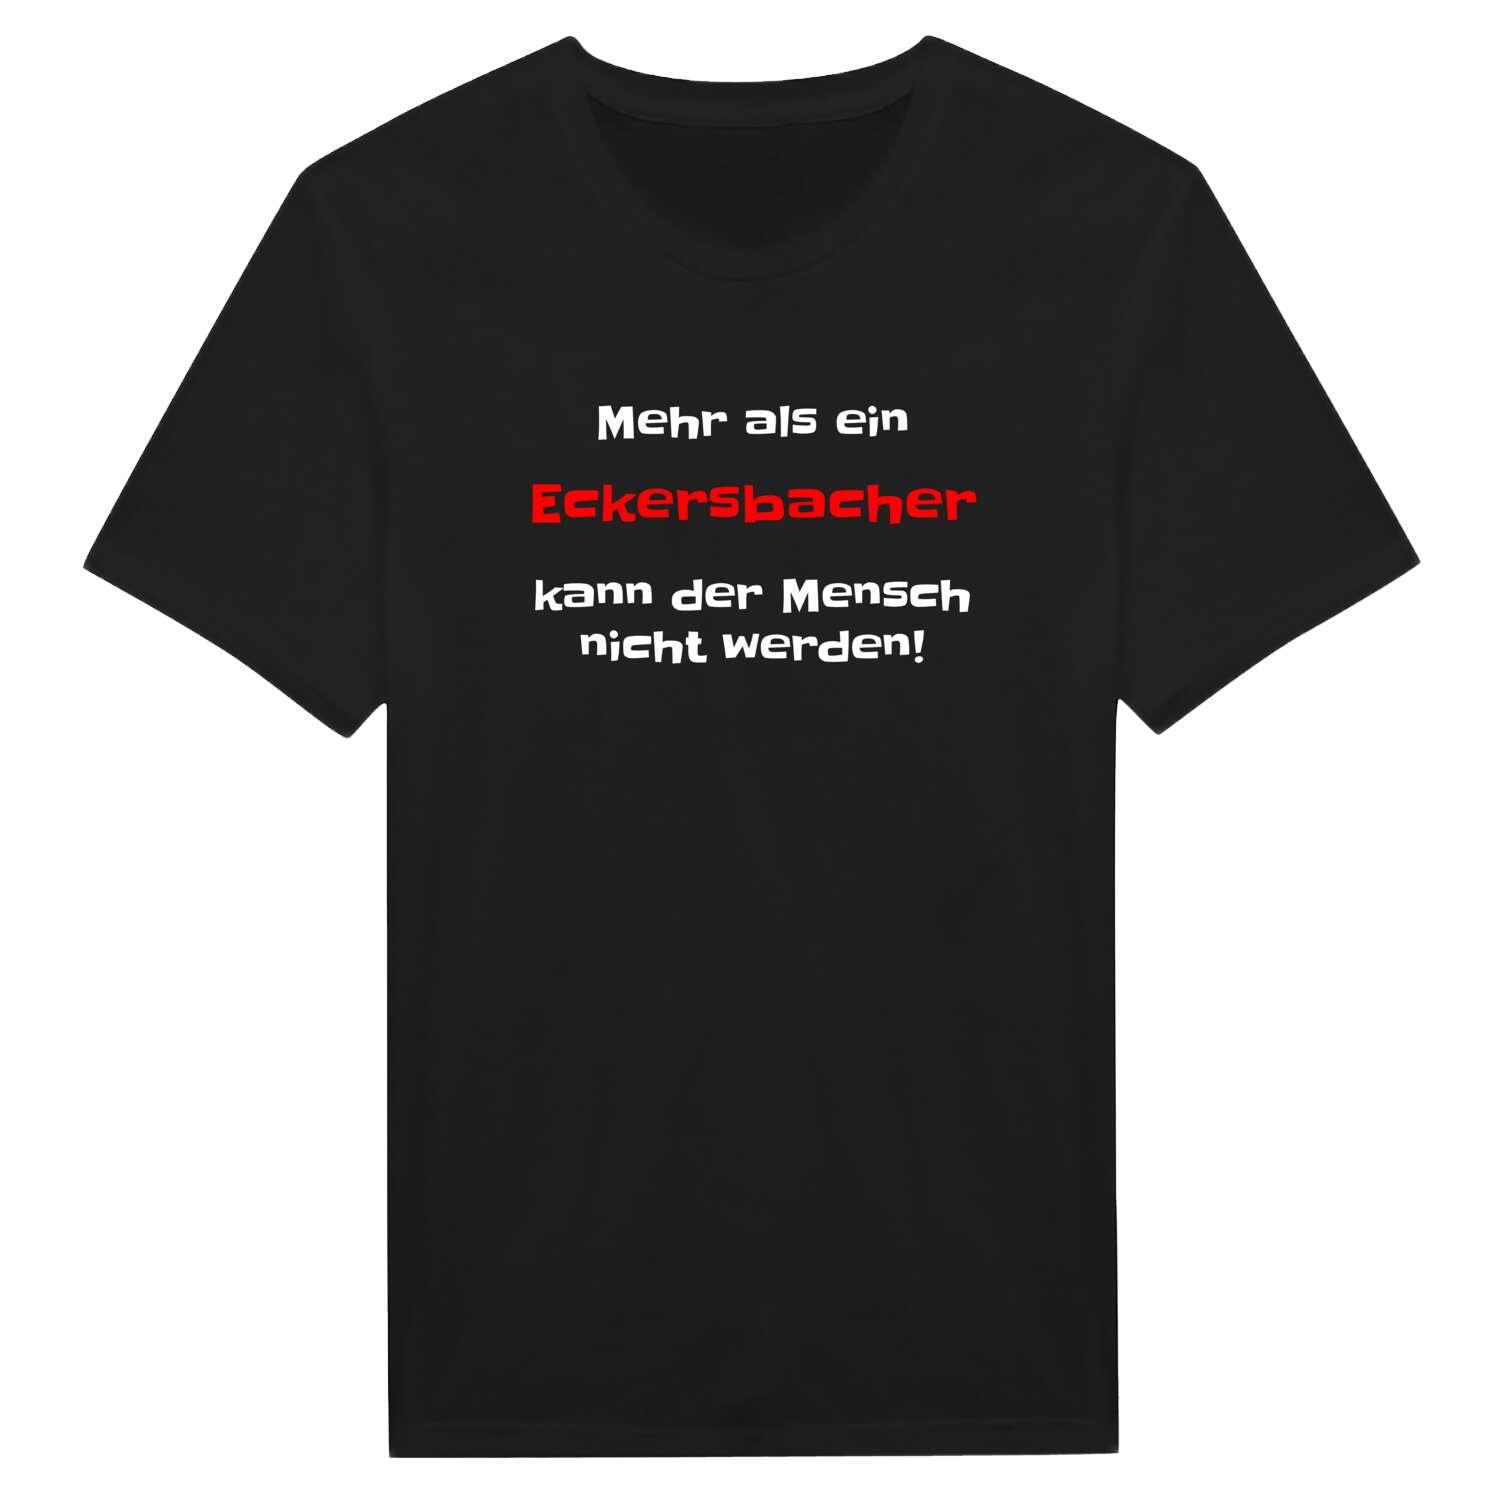 Eckersbach T-Shirt »Mehr als ein«